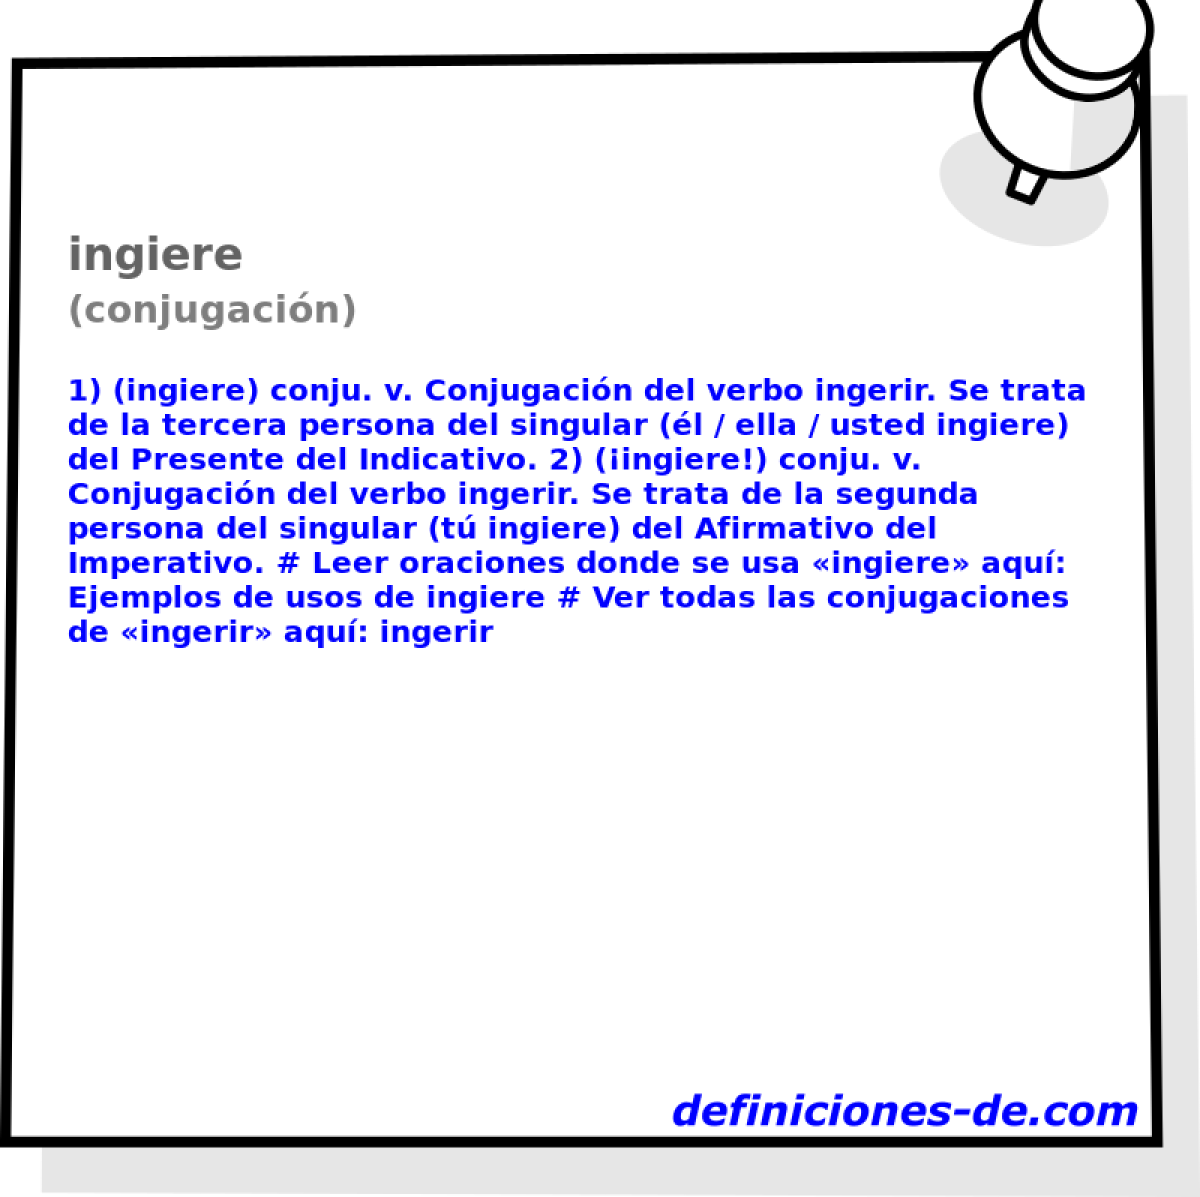 ingiere (conjugacin)